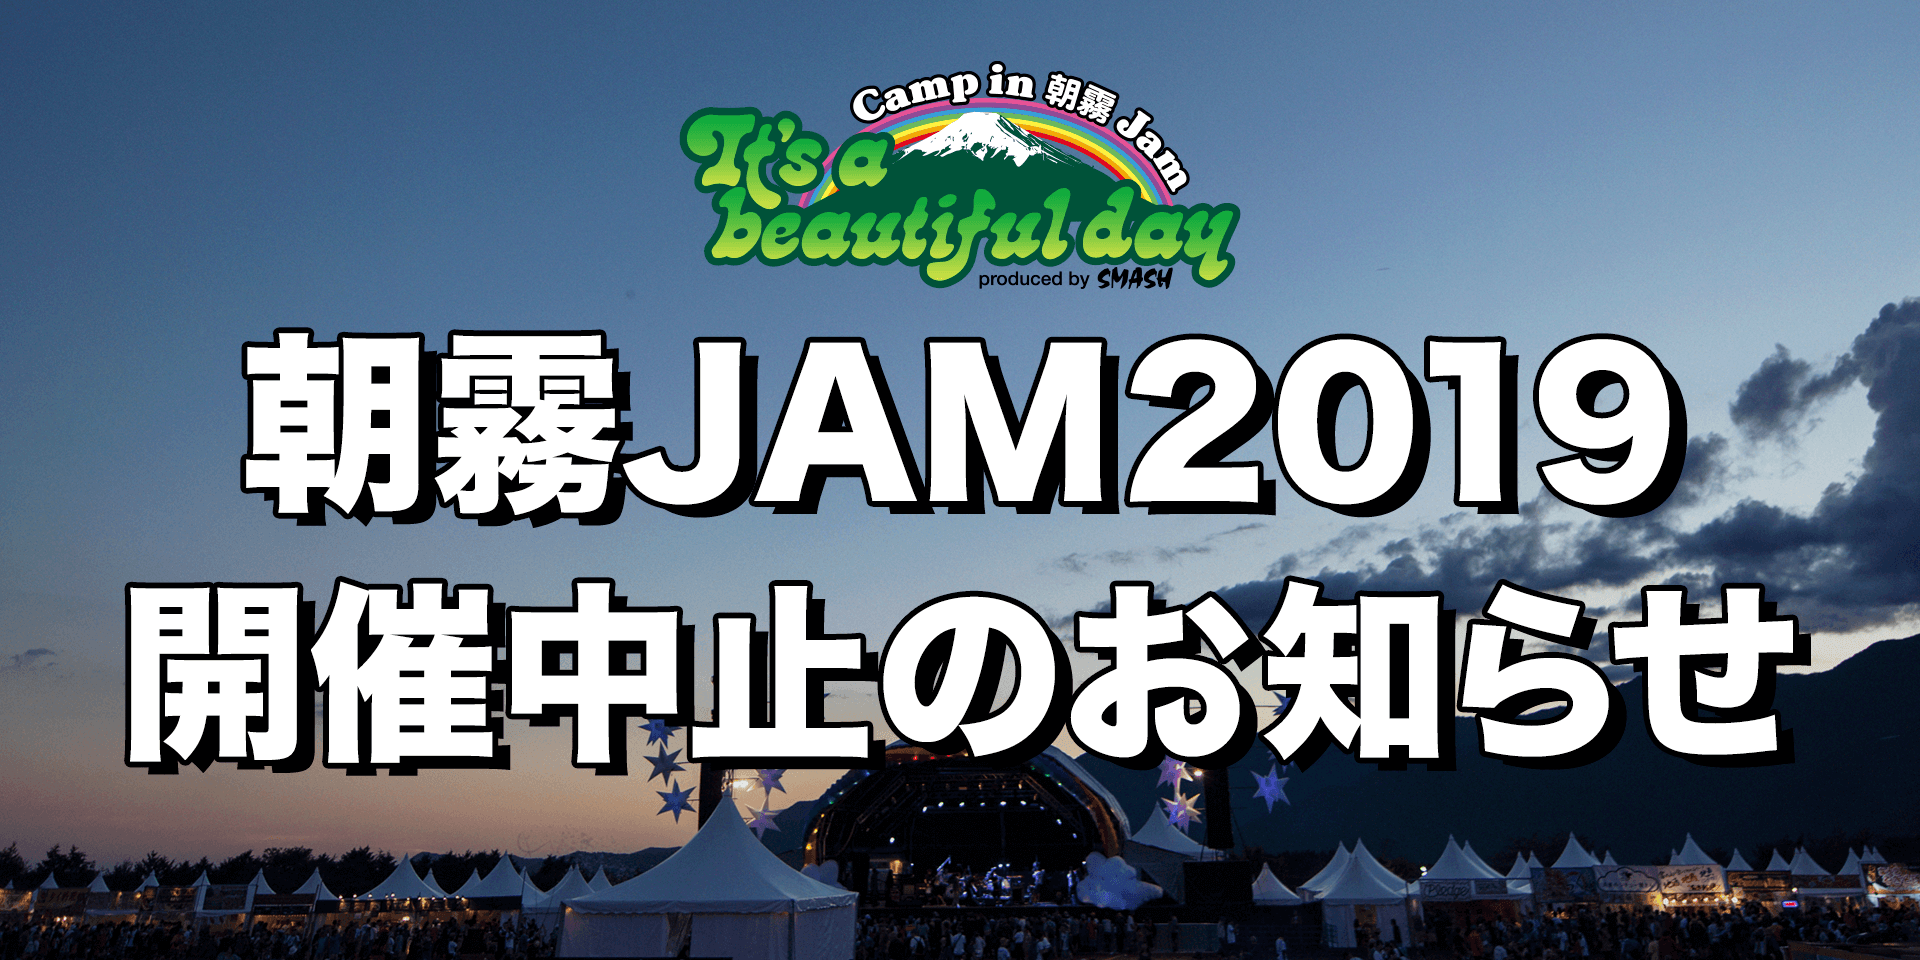 「朝霧JAM 2019 」開催中止のお知らせイメージ